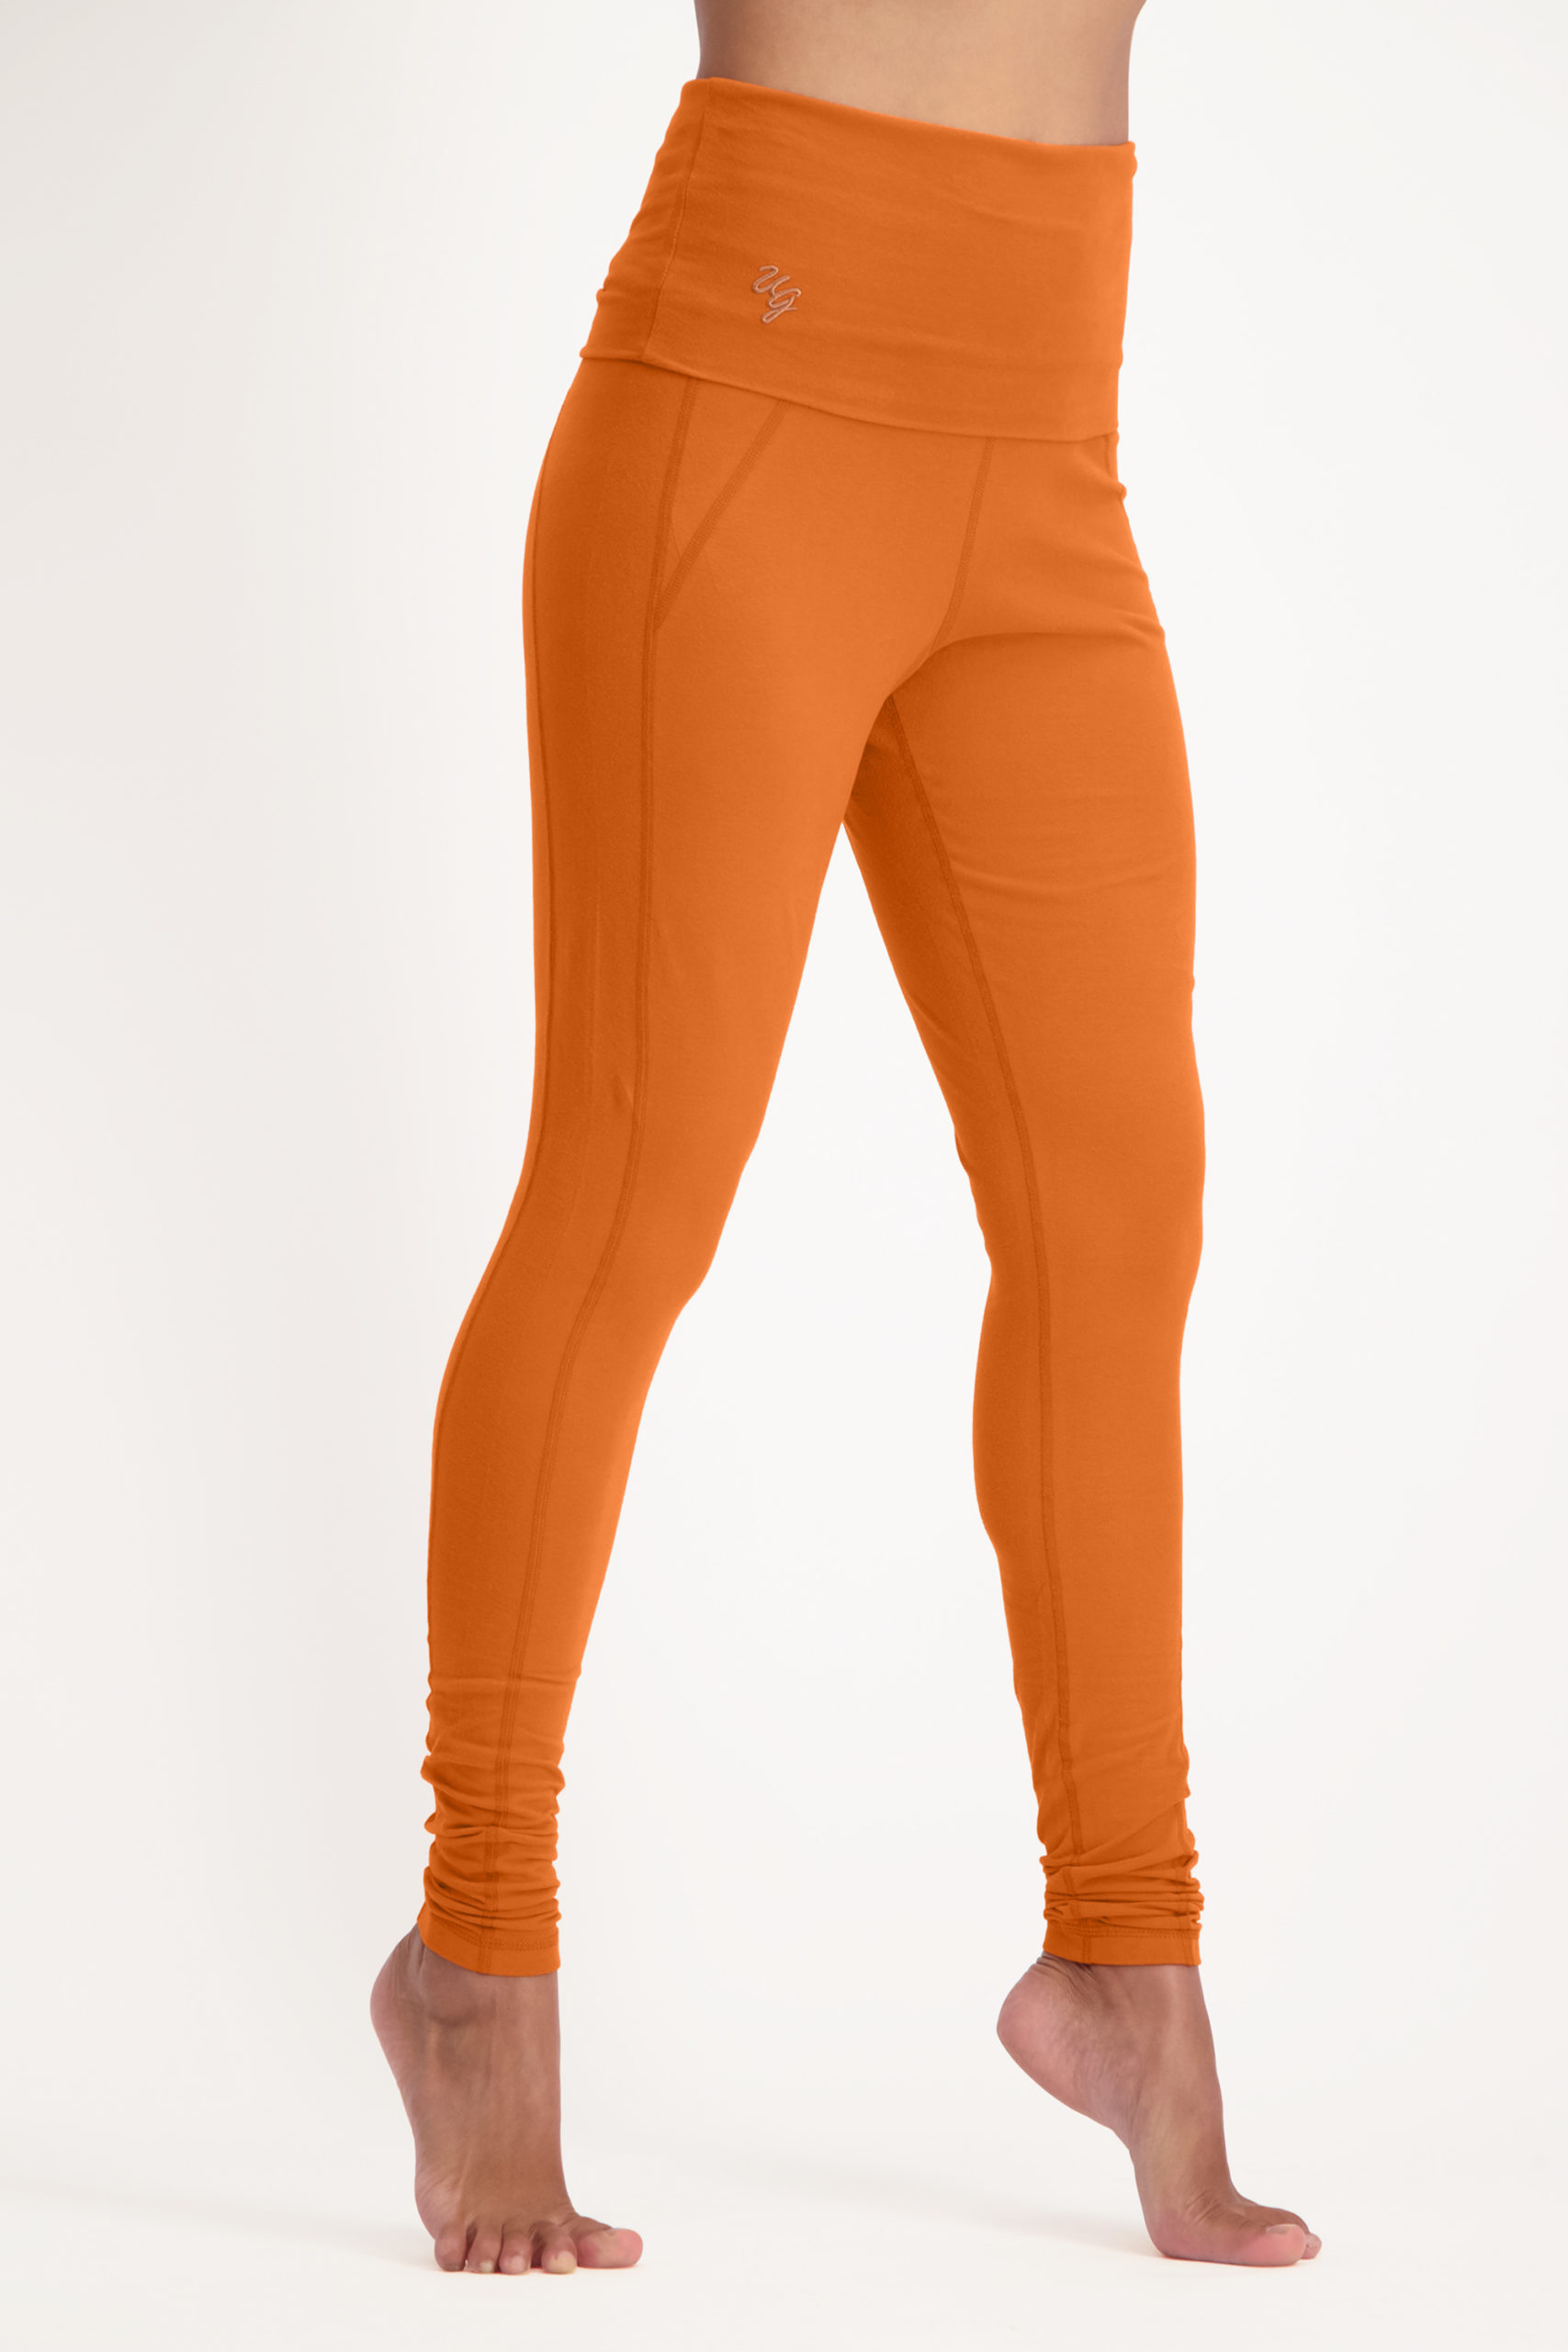 OM leggings-Bombay brown-11365539-front-model_Fullbody_TIFF_1